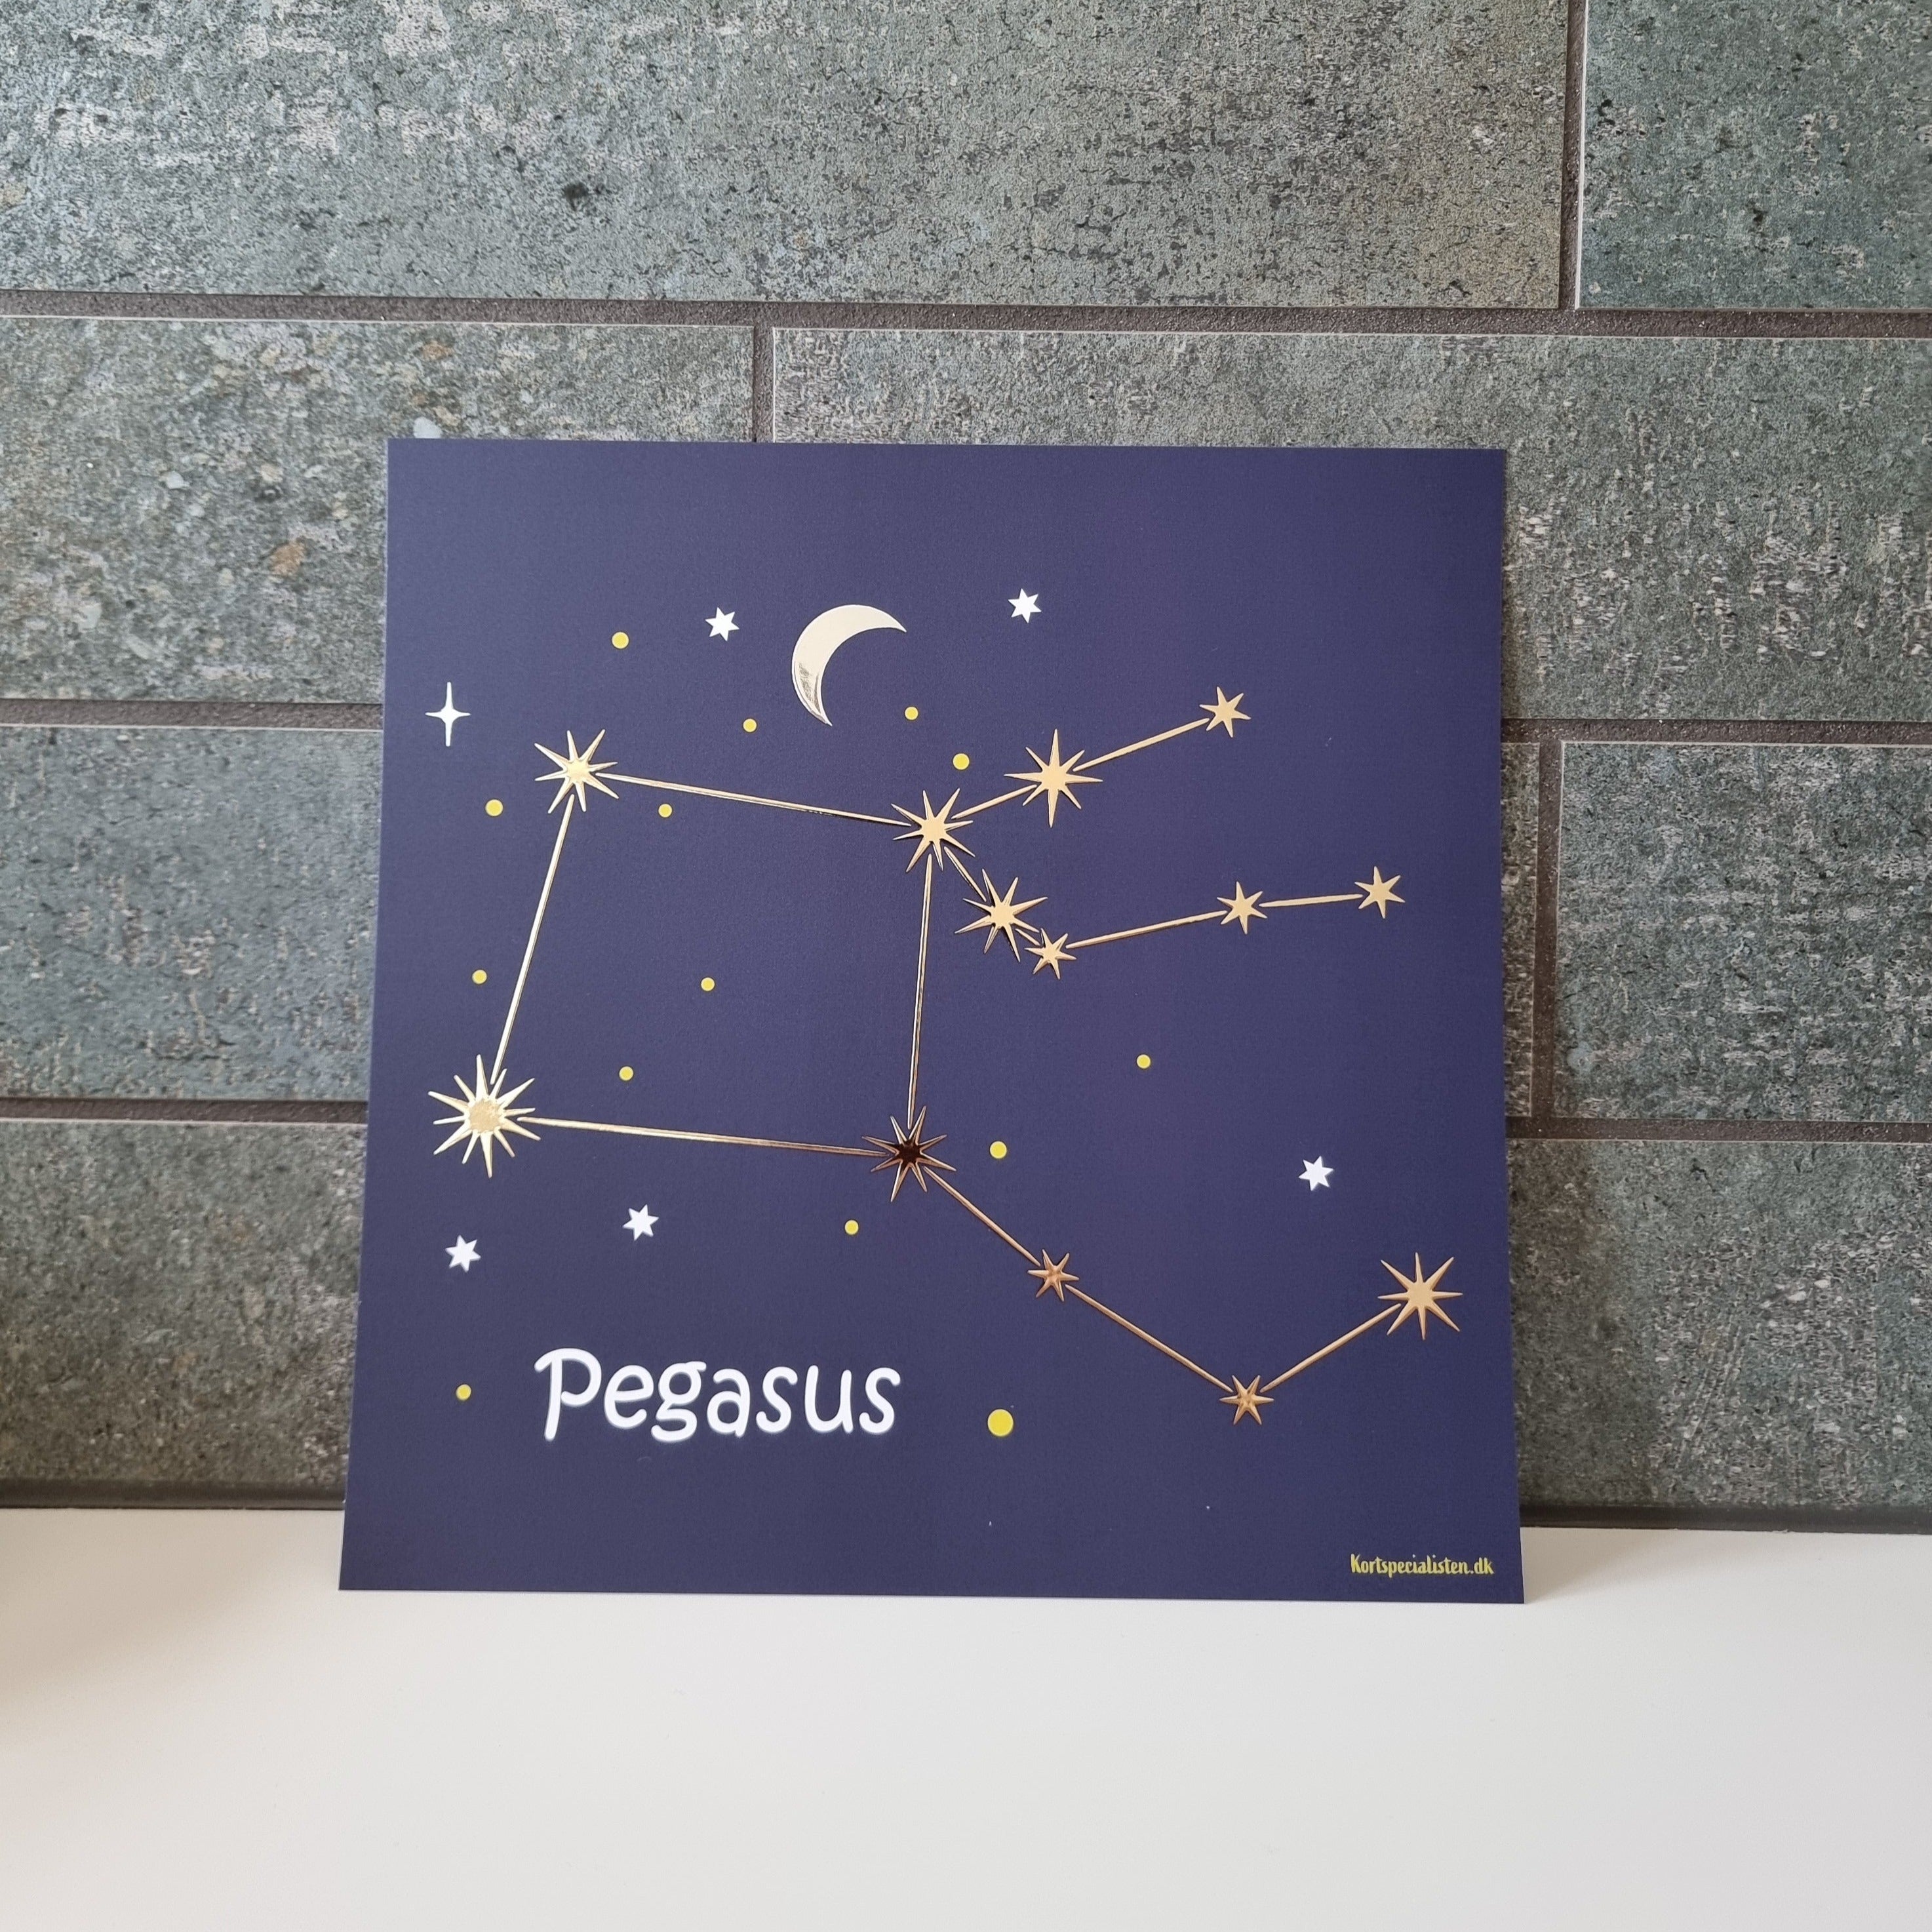 Constellation - Pegasus